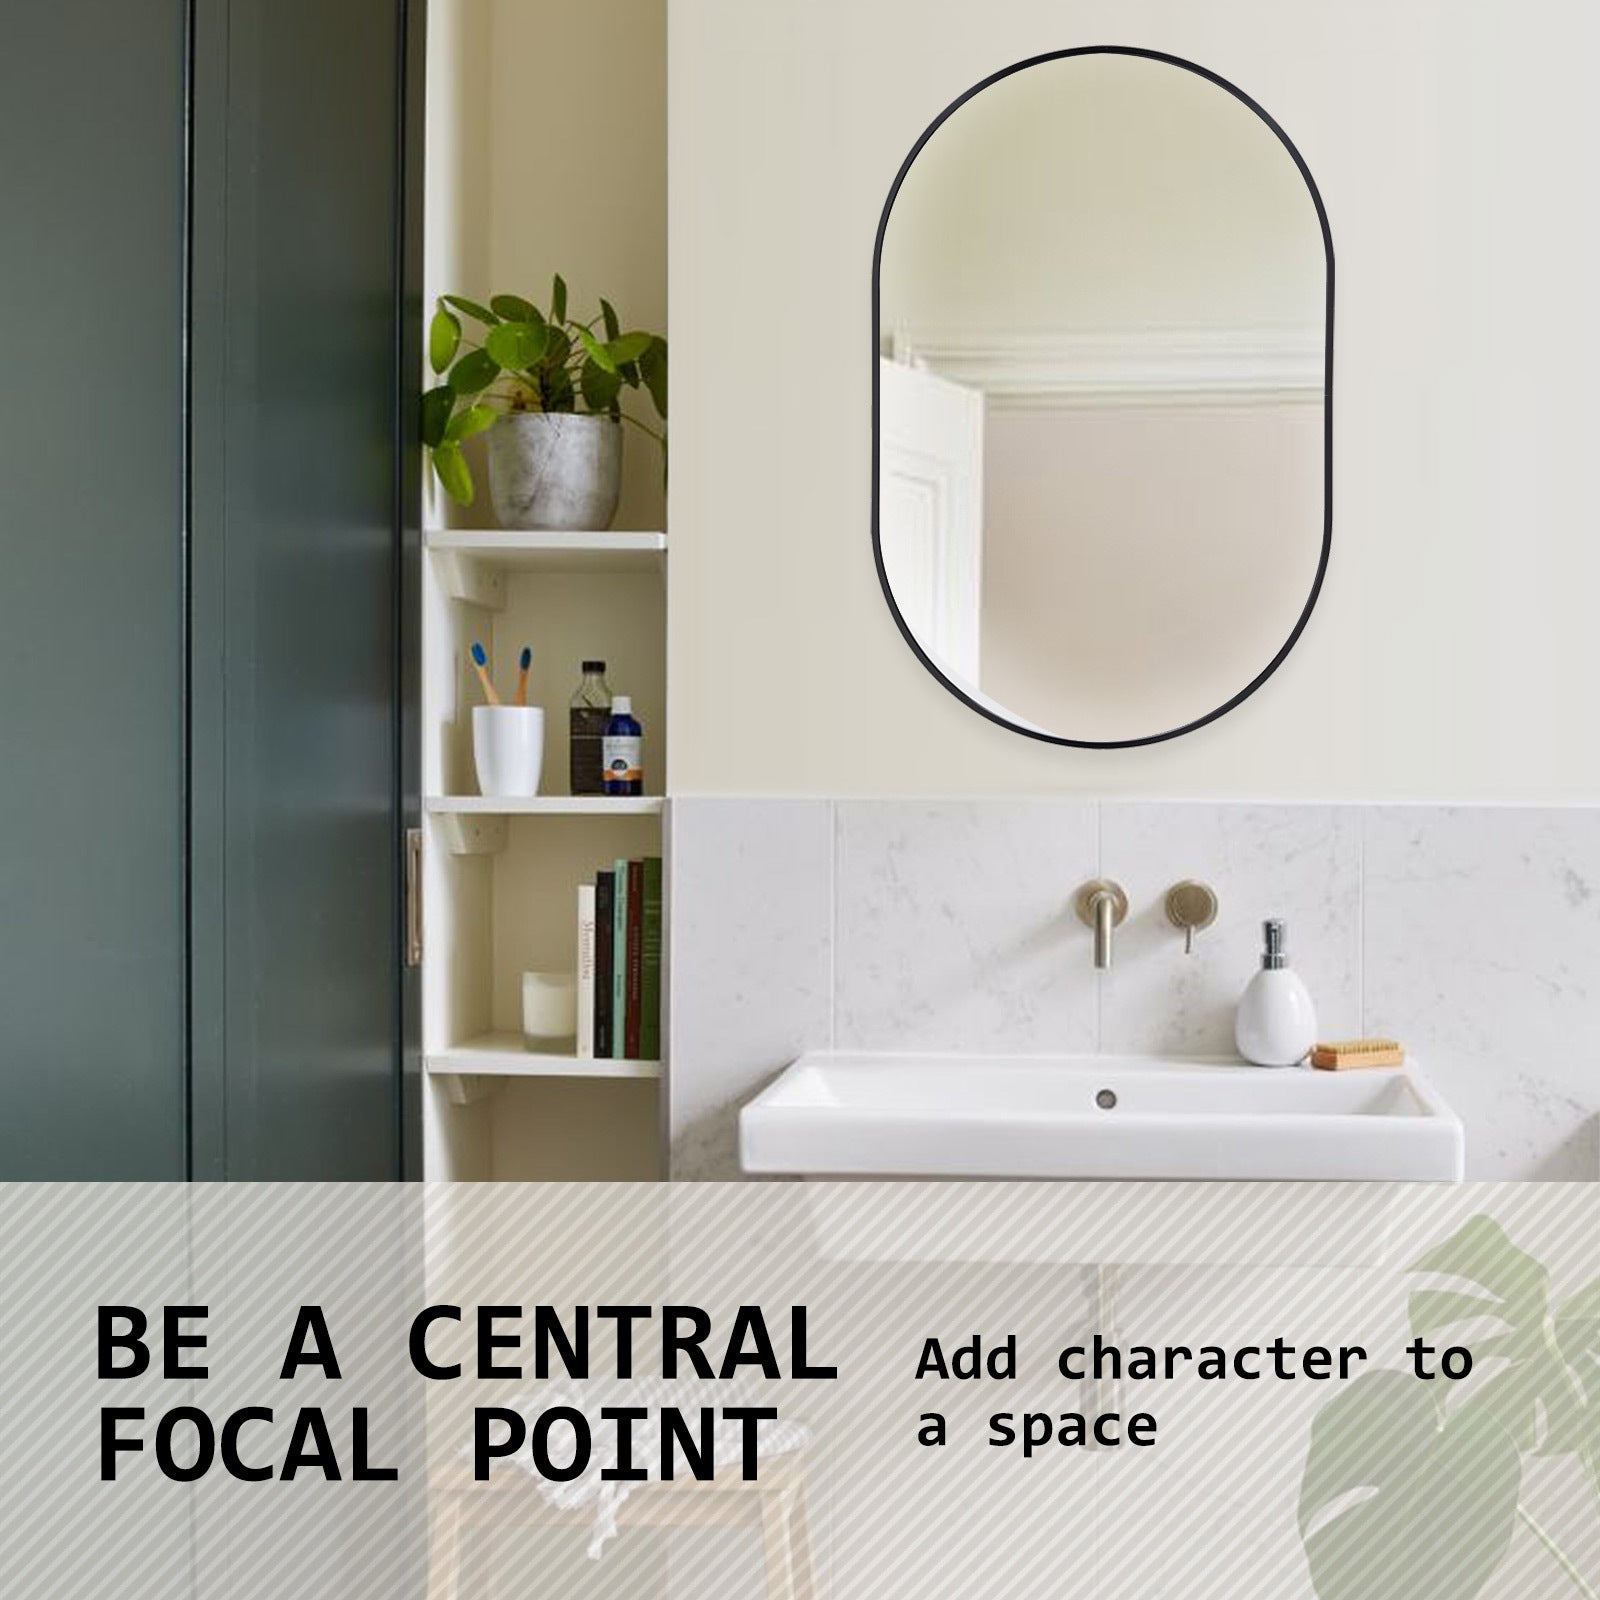 La Bella Black Wall Mirror Oval Aluminum Frame Makeup Decor Bathroom Vanity 50x75cm